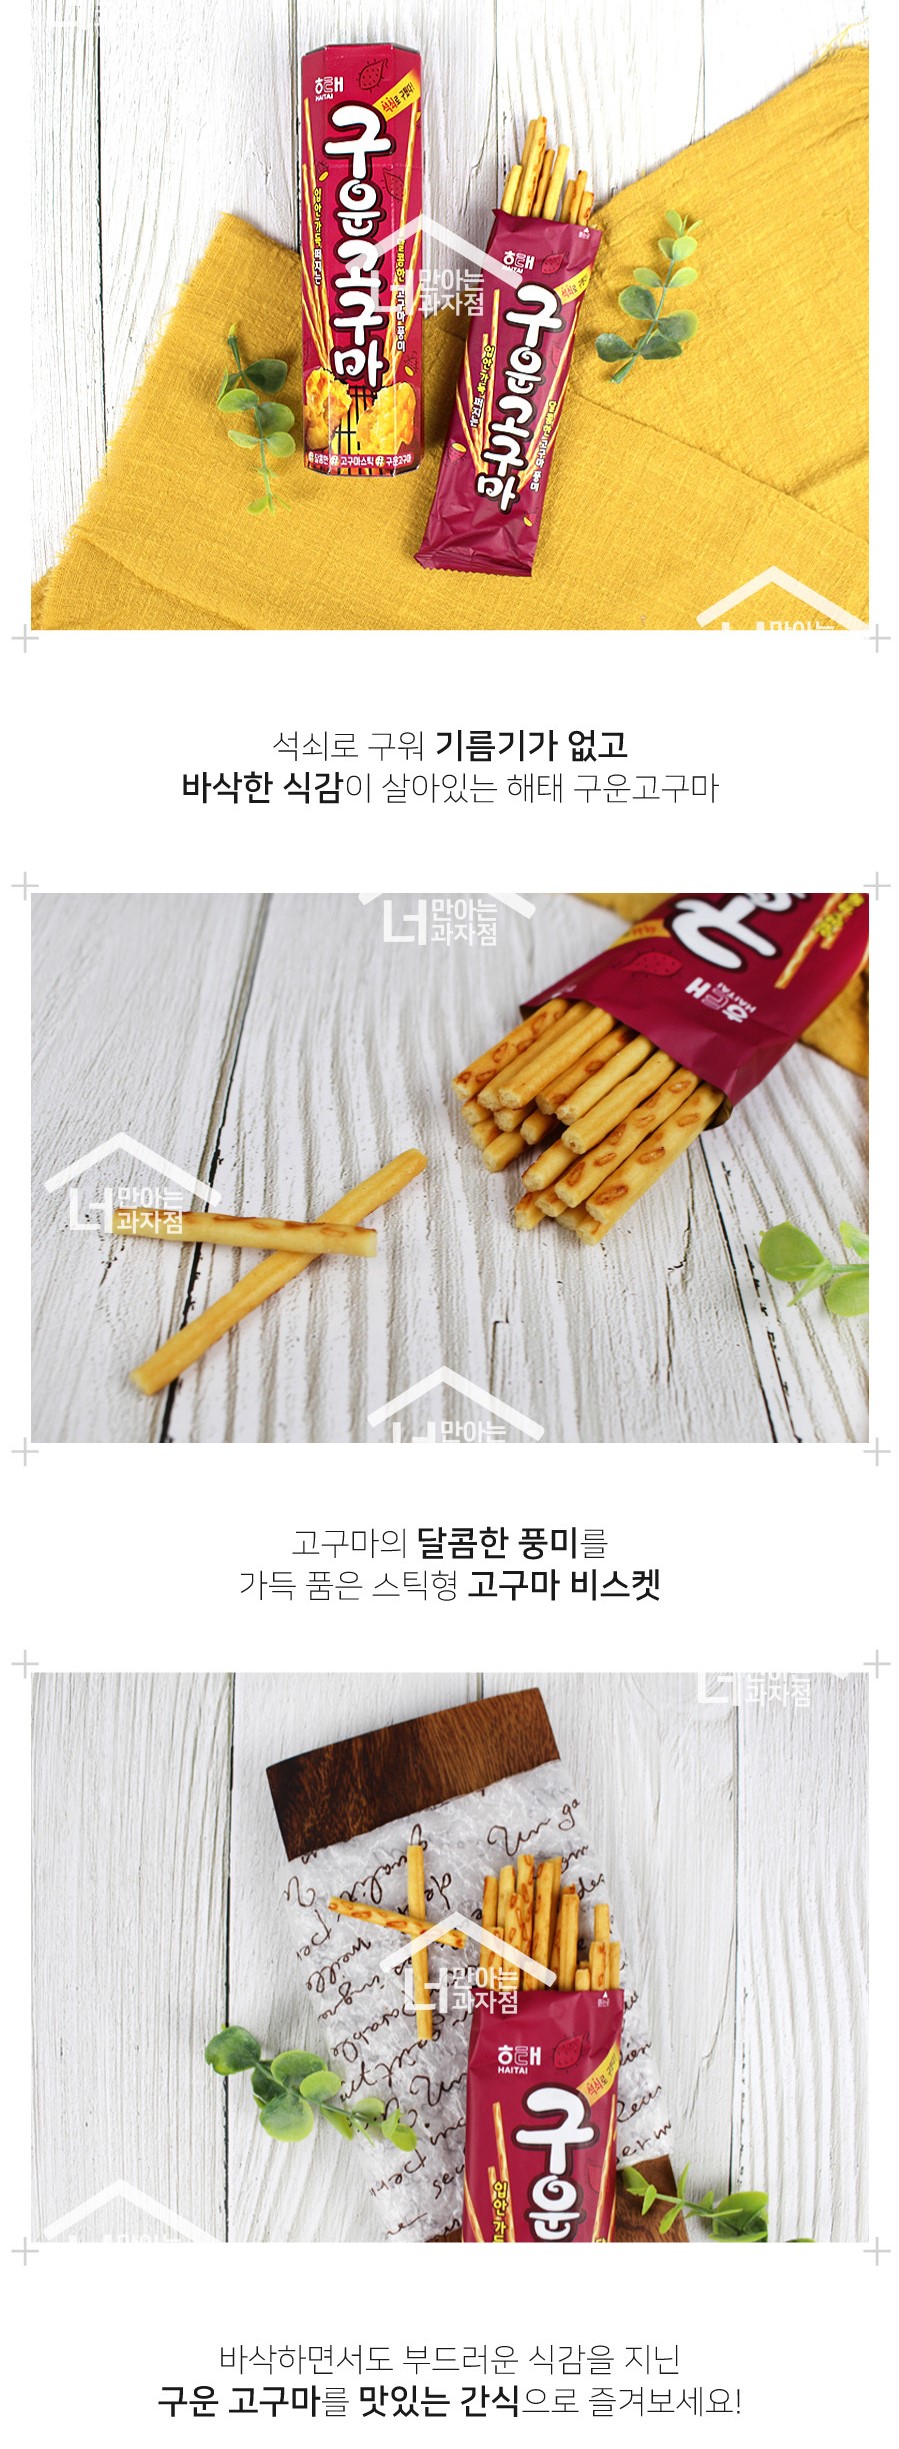 韓國食品-[海泰] 烤蕃薯 27g